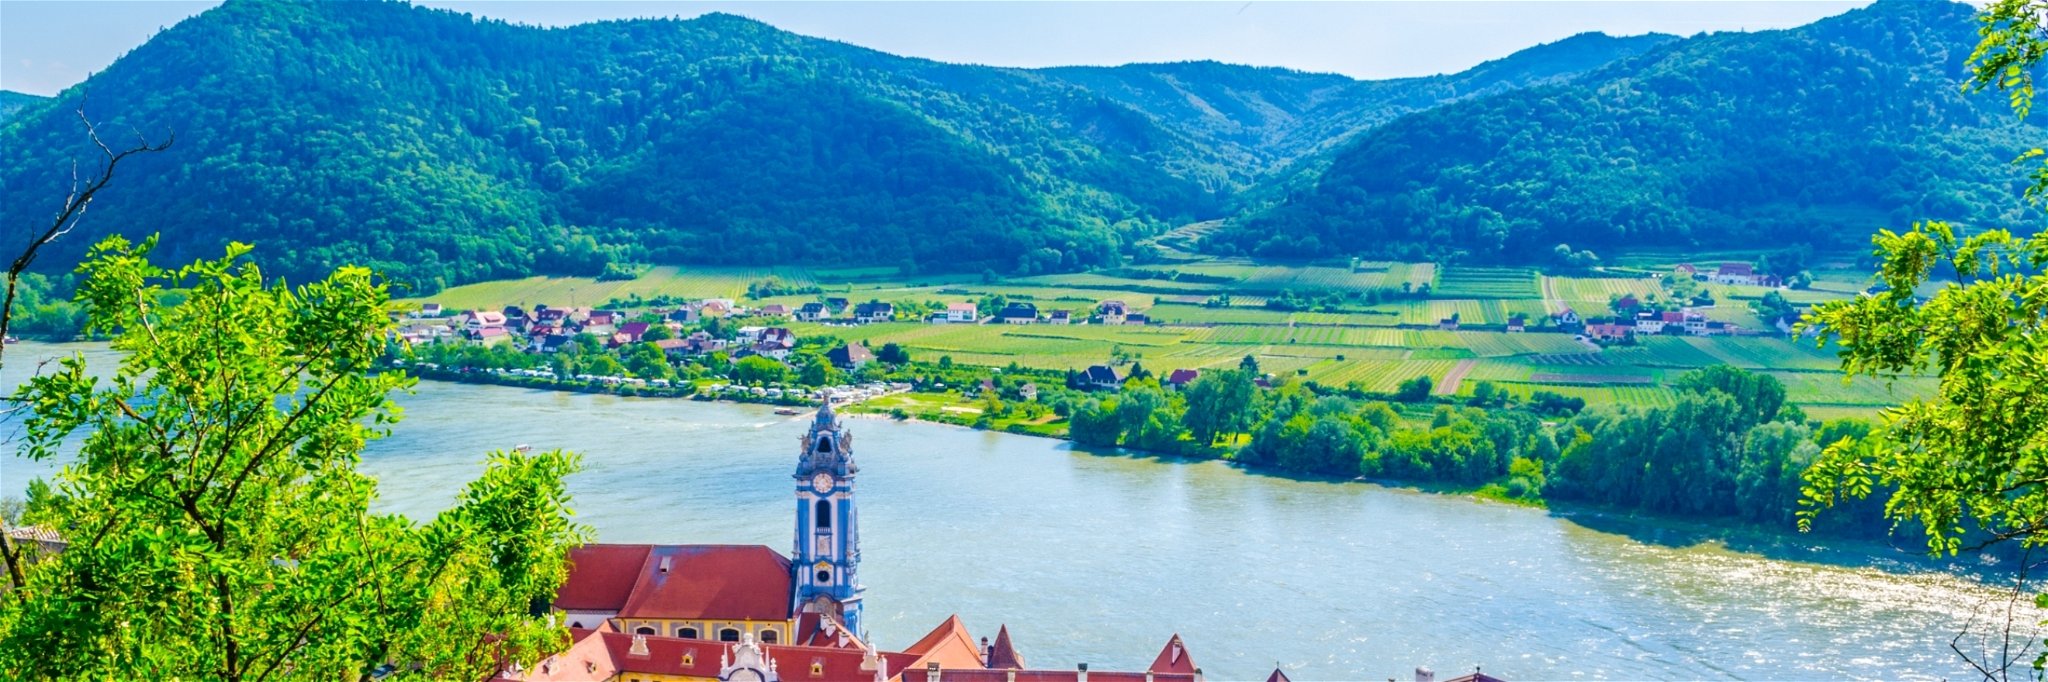 The Danube flows through Austria's Wachau region.